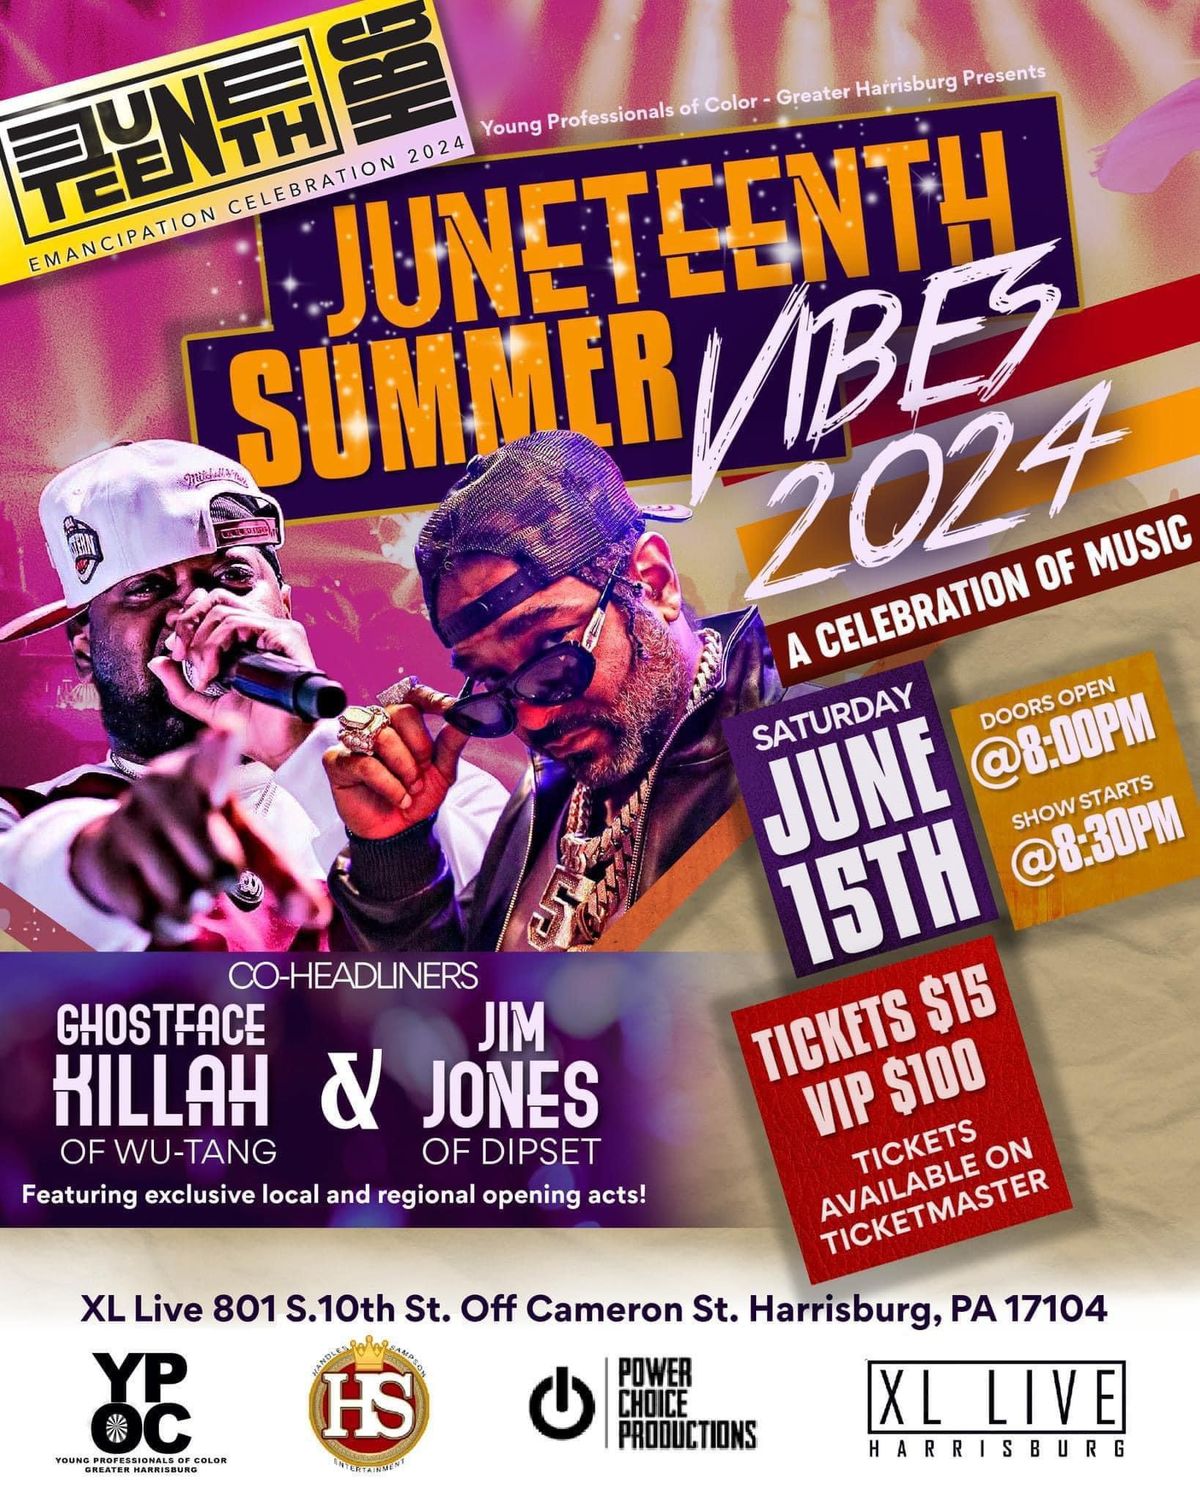 Juneteenth HBG: Summer Vibes Concert